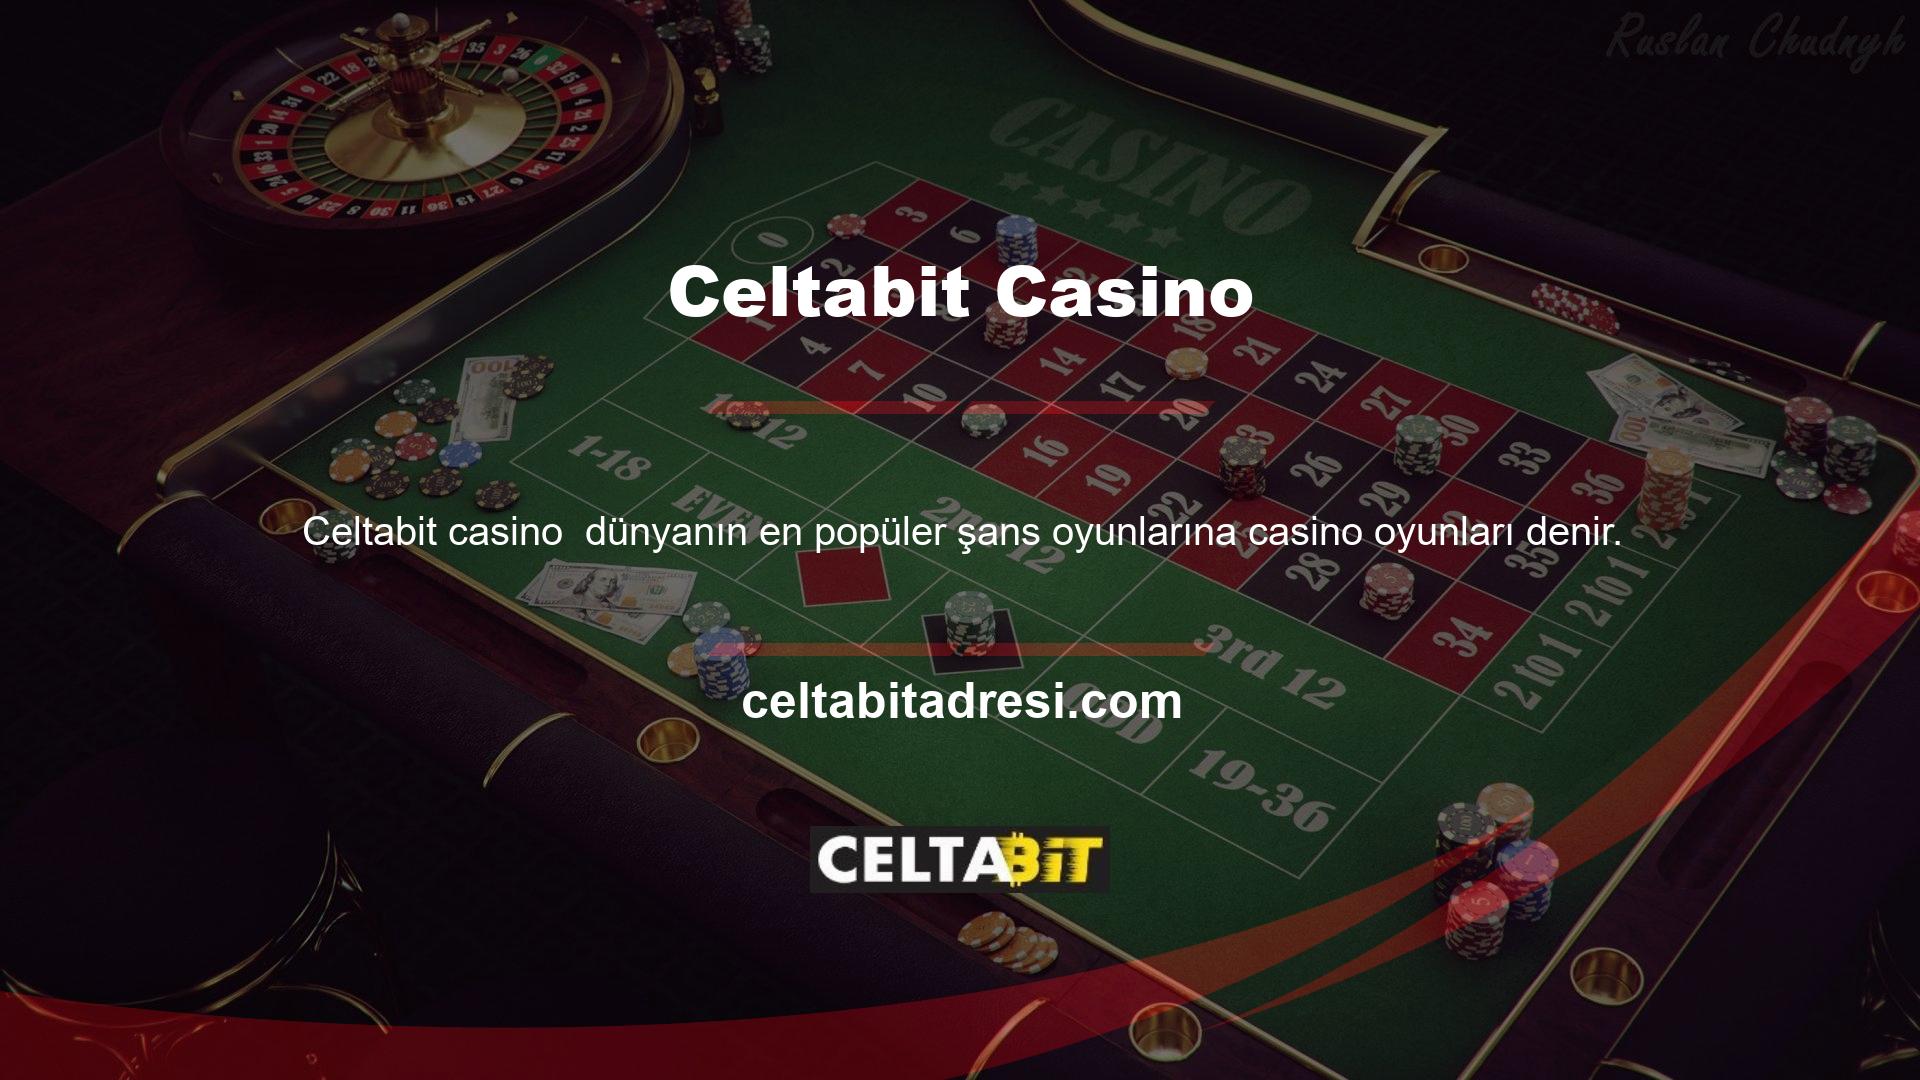 Casino Games tarafından sunulan Celtabit Casino Bonusları/Promosyonları Masa Oyunları